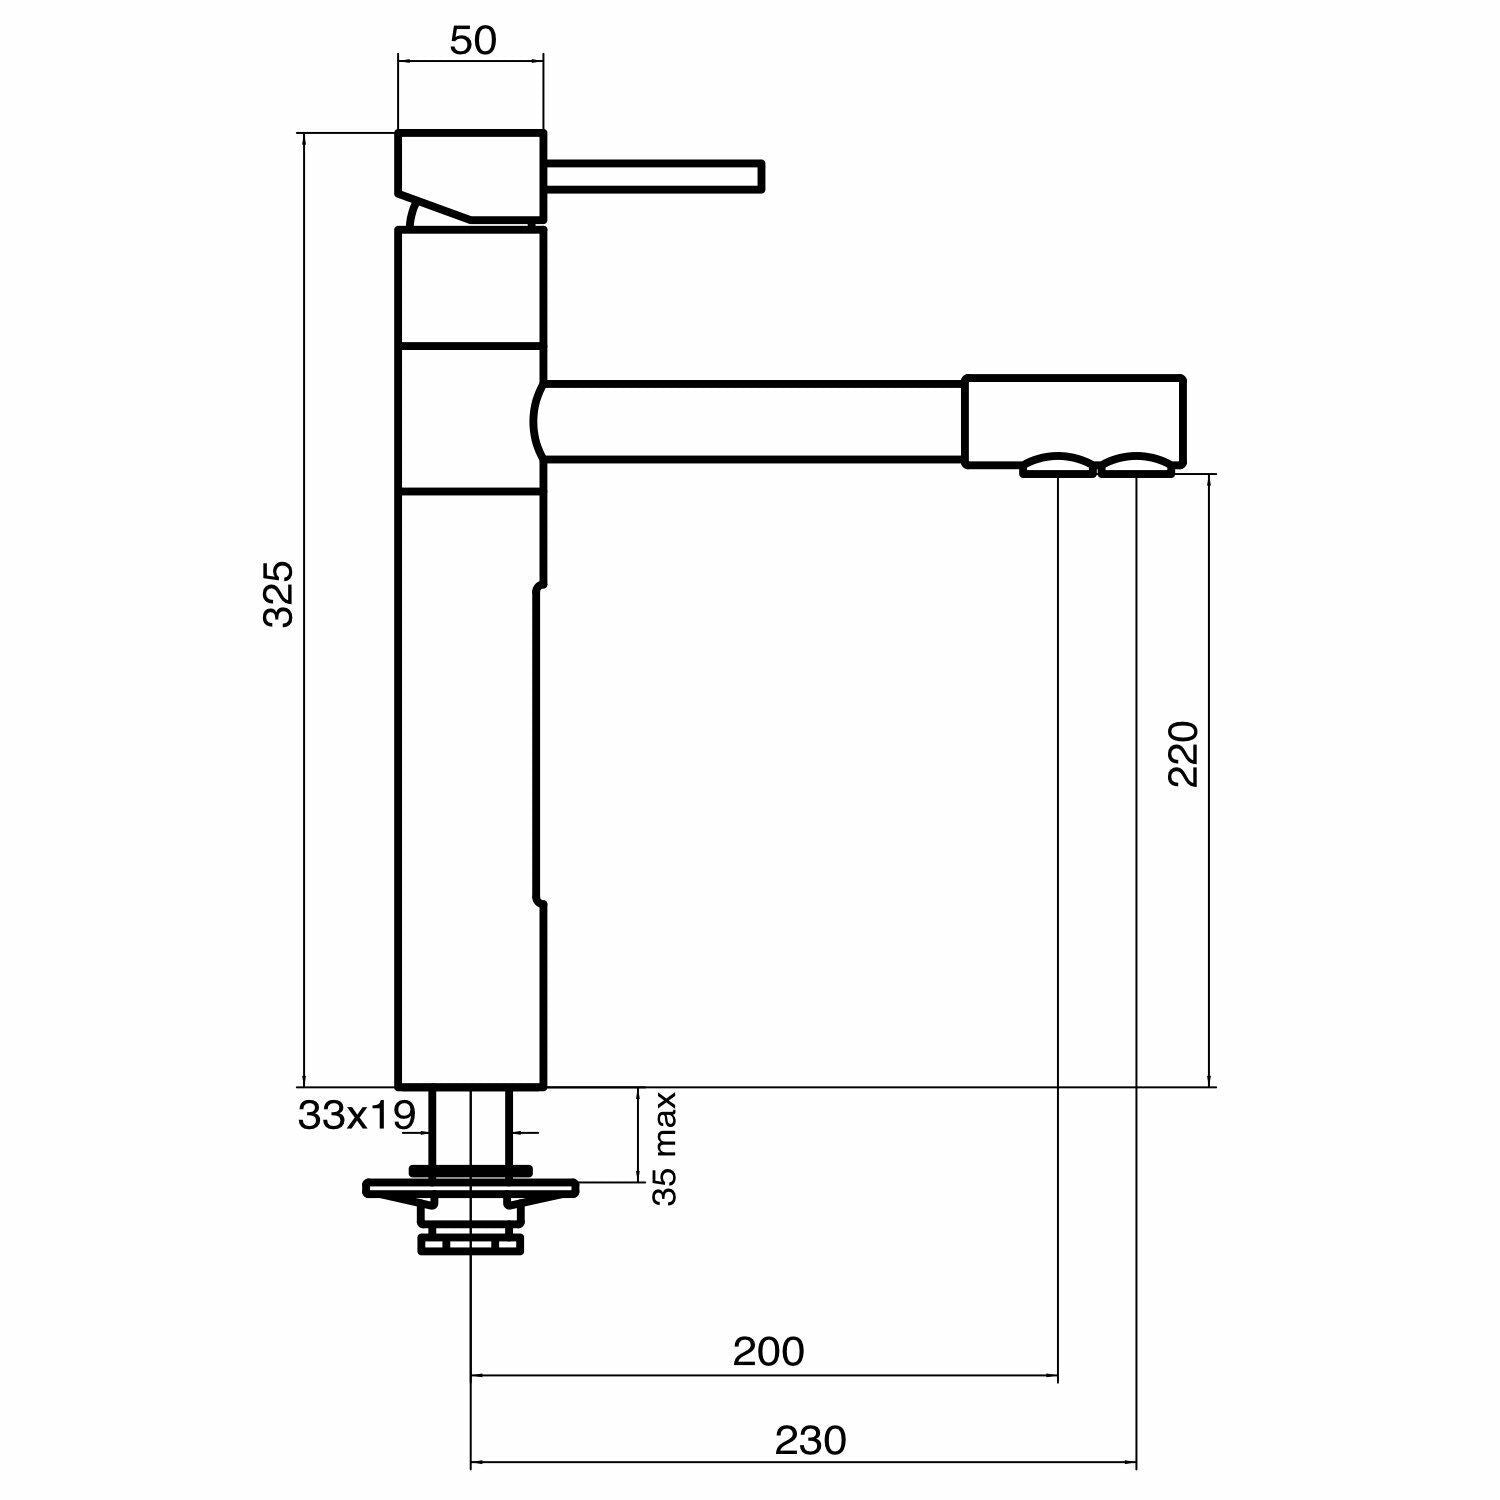 Untertisch-Trinkwassersystem INOX inkl. 5-Wege-Armatur STELLA